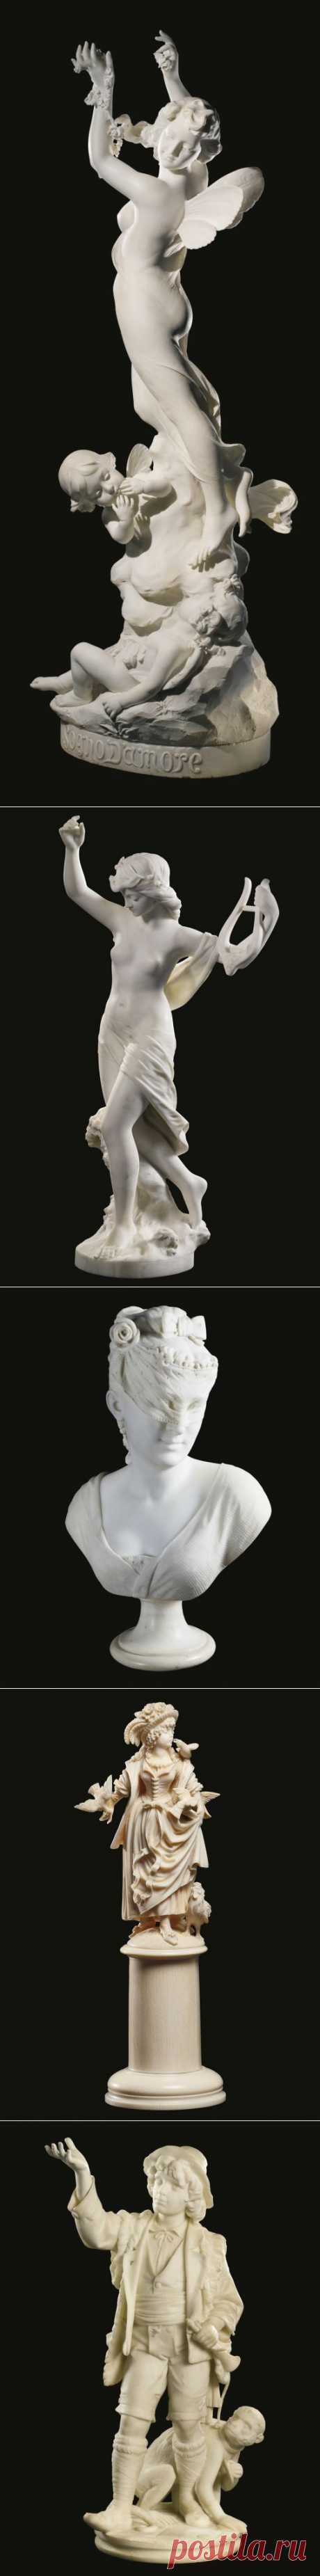 Антикварные скульптуры и бюсты из белого мрамора 16 - 19 век с аукциона Sothebys